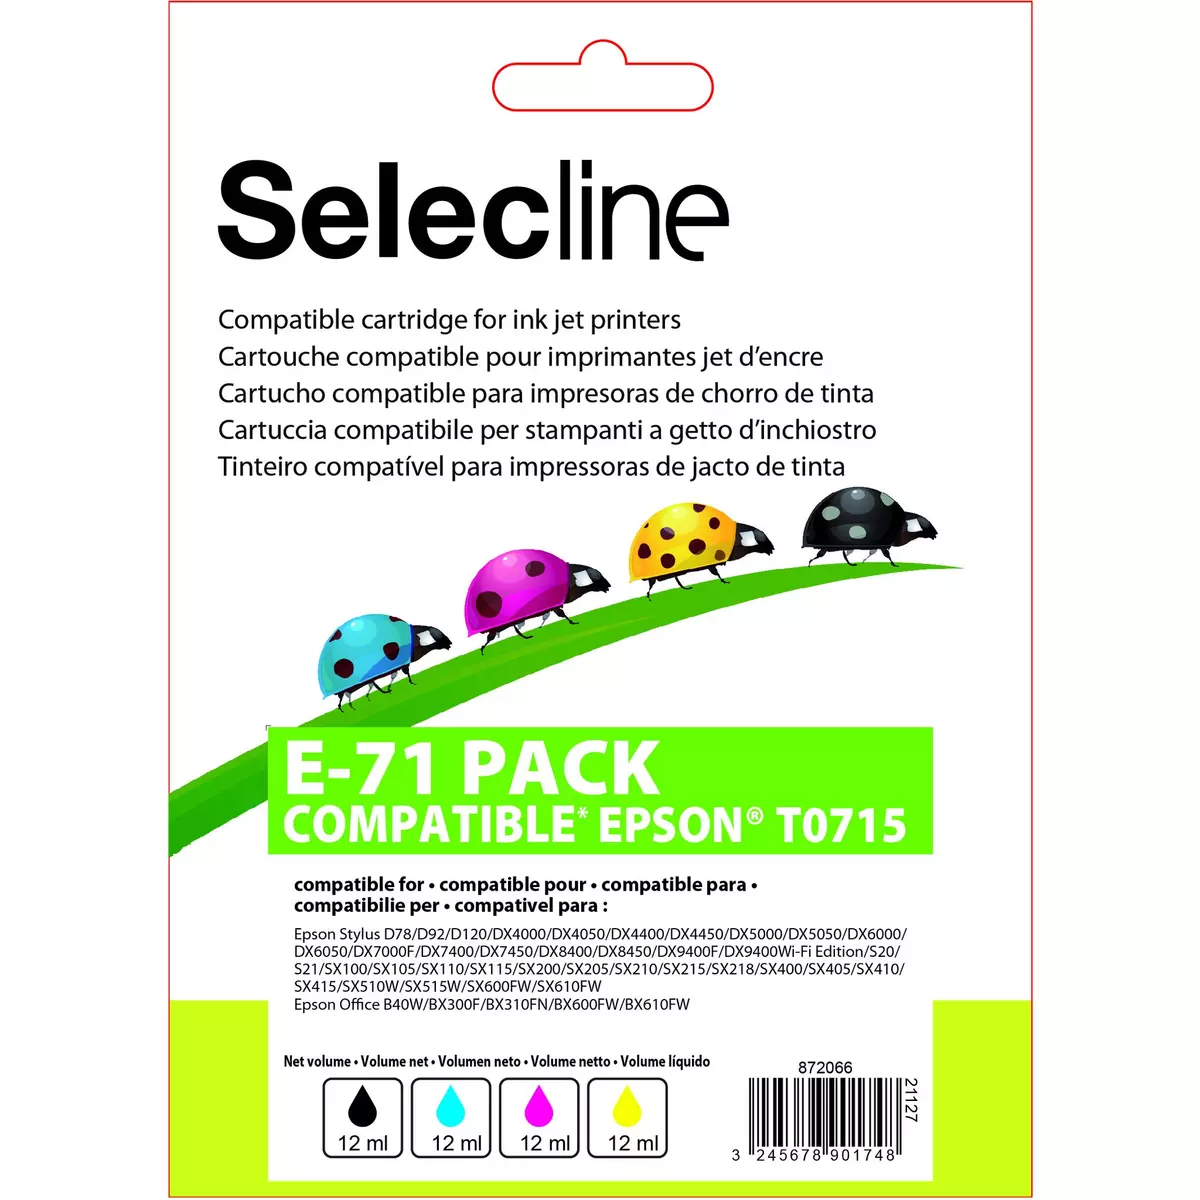 SELECLINE Cartouche 4 Couleurs E-71 PACK